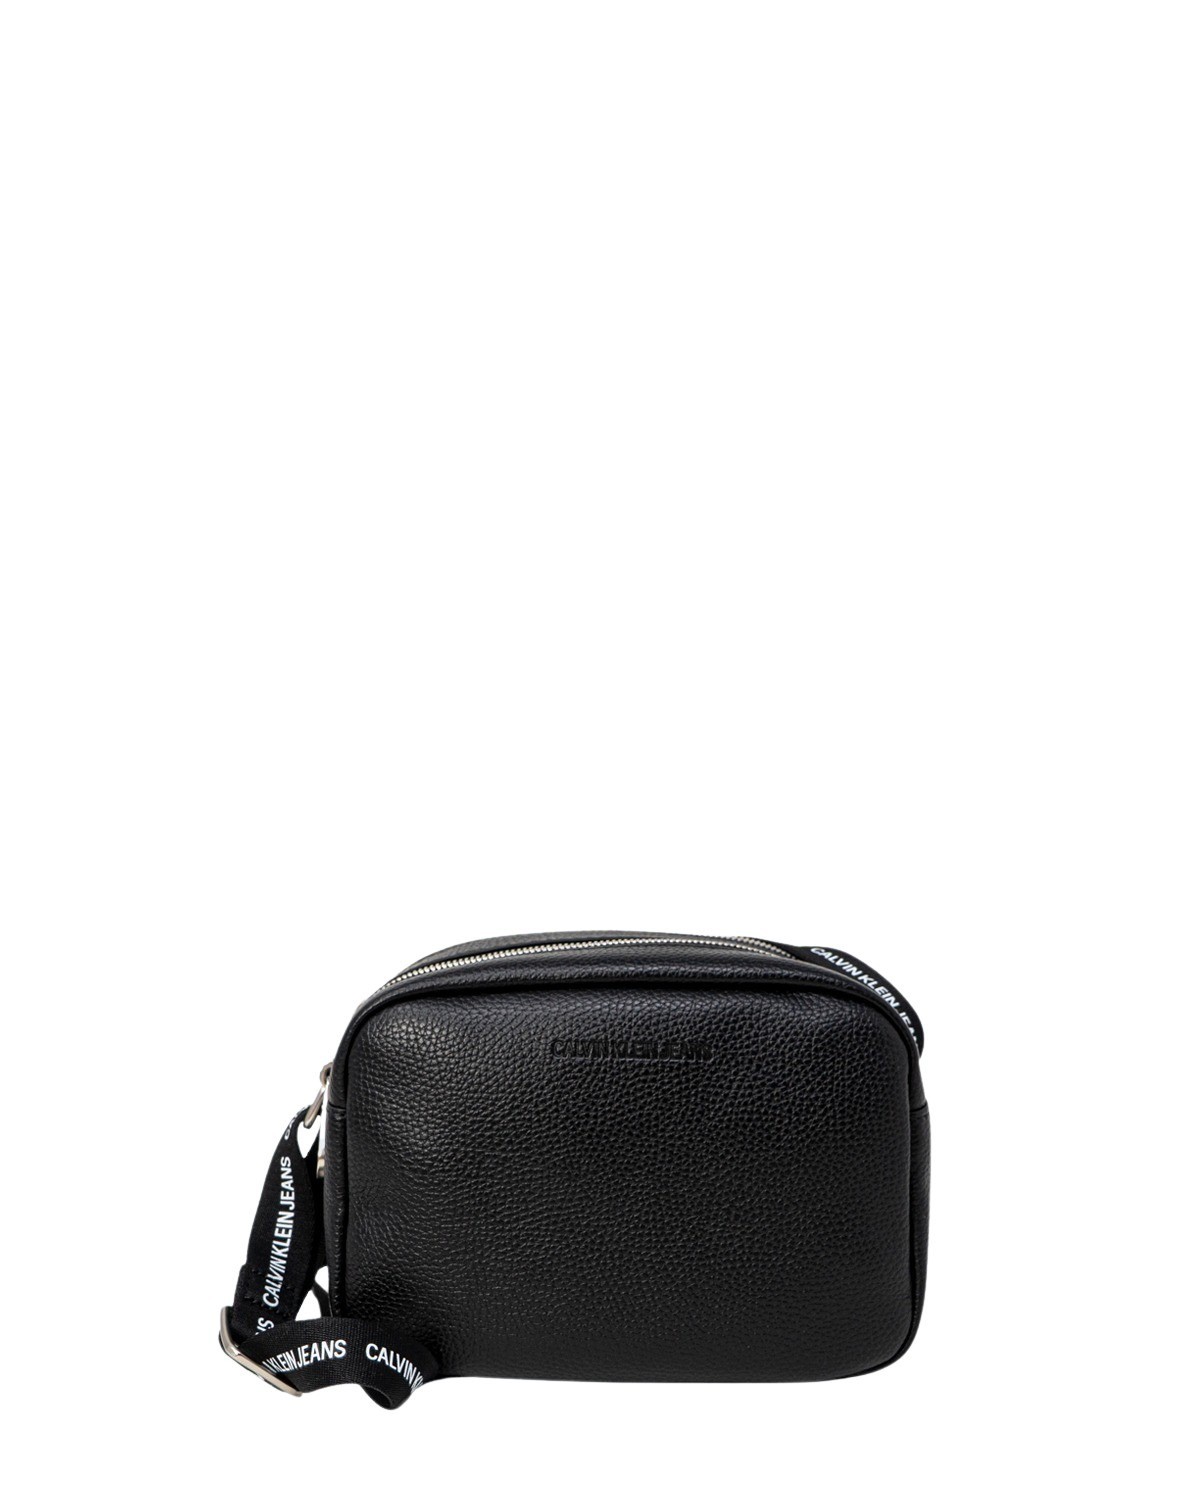 Calvin Klein Women's Handbag Various Colours 305107 - black UNICA